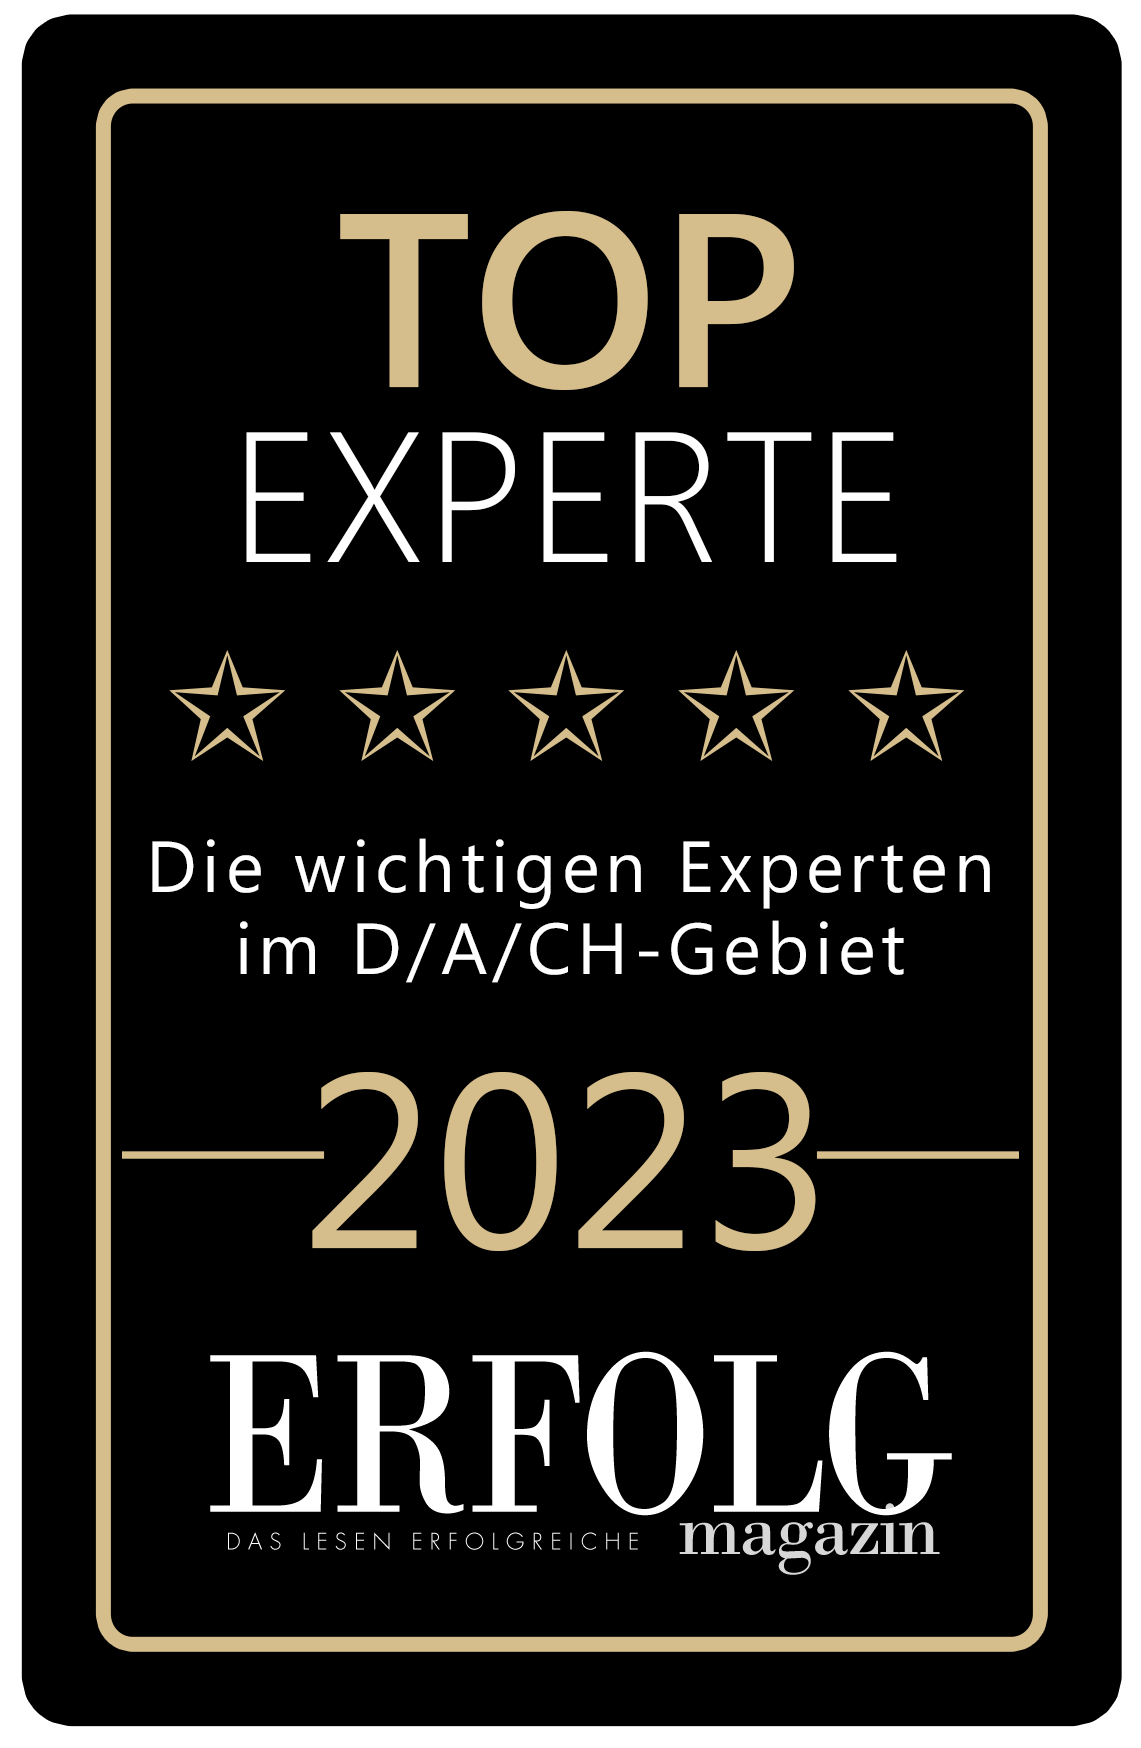 Top Experte 2023 - ERFOLG Magazin